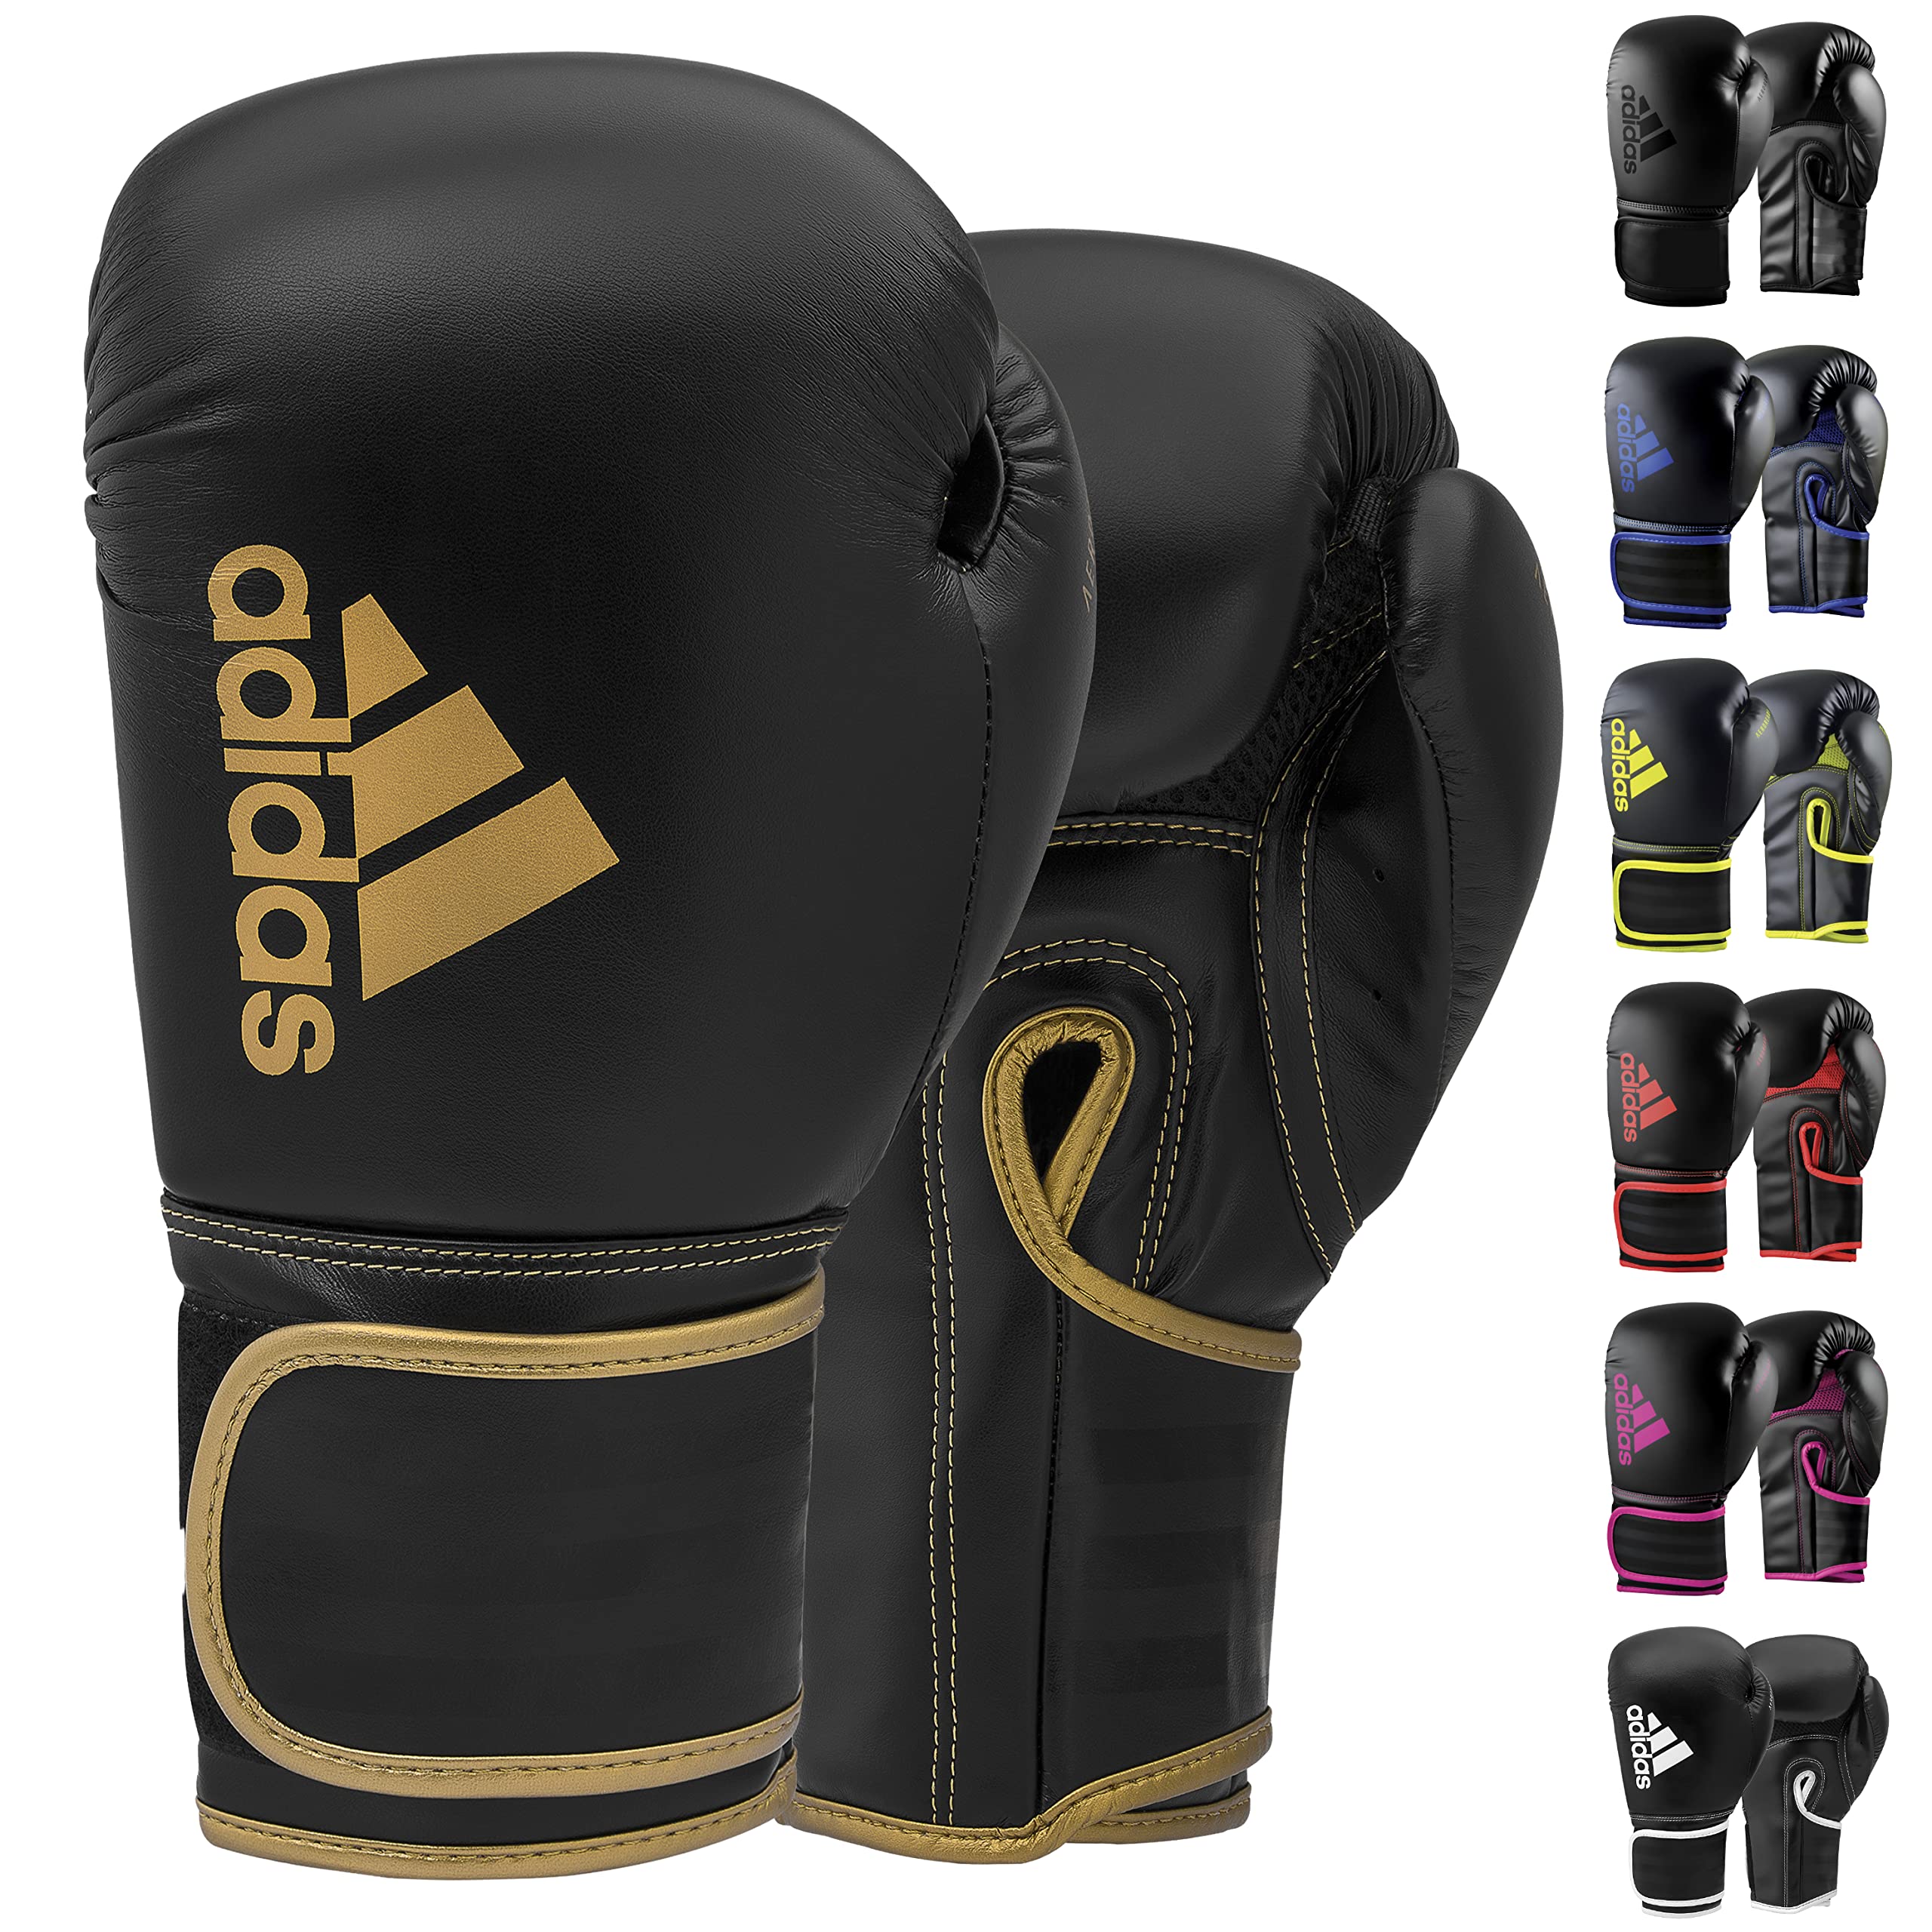 & Fitness for 80 for Men, Bag, Boxing MMA, - - Training Kids Hybrid Adidas Women 12oz Gloves Black/Gold Boxing - & Boxing, Kickboxing, Gloves